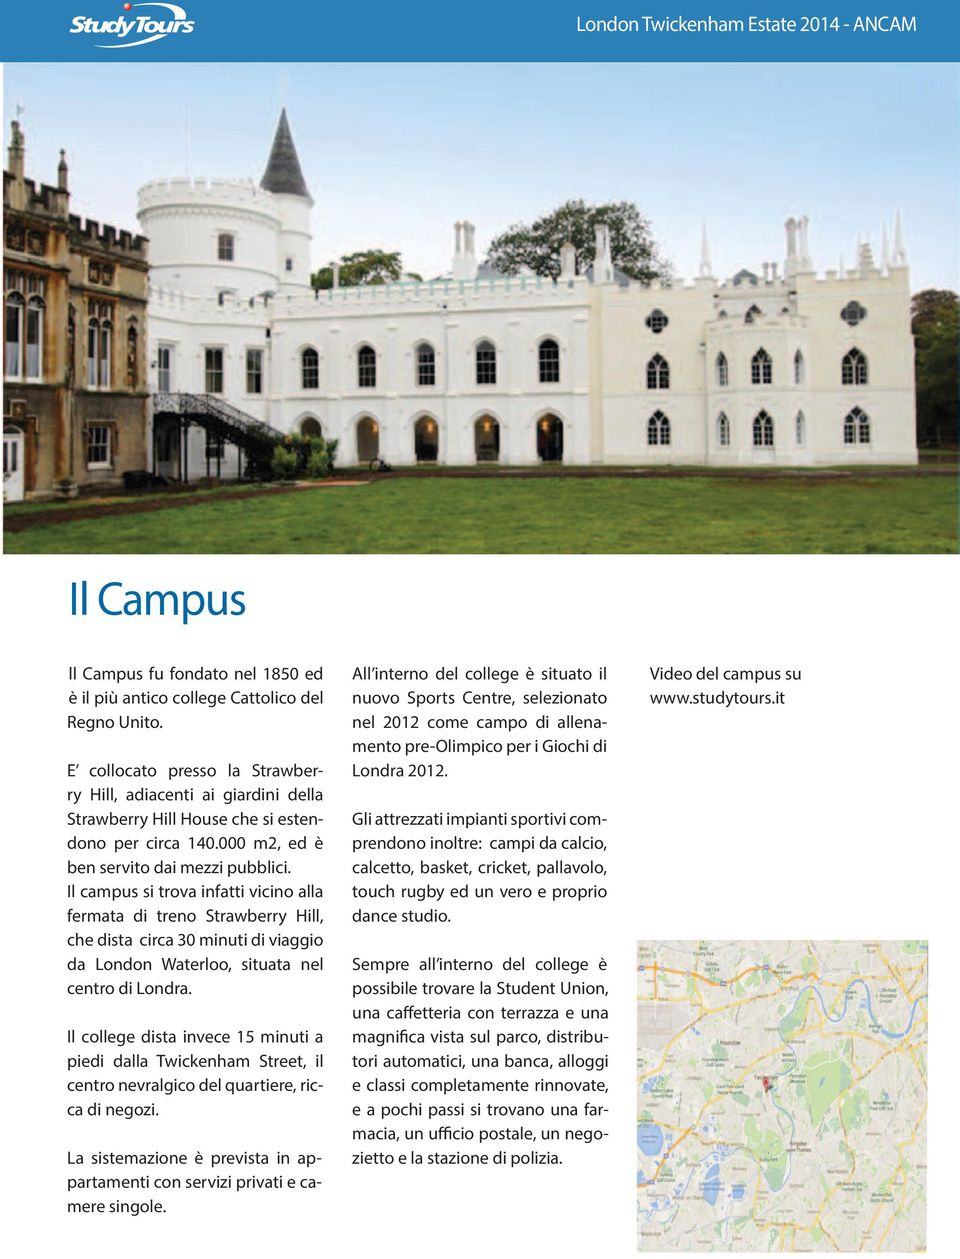 Il campus si trova infatti vicino alla fermata di treno Strawberry Hill, che dista circa 30 minuti di viaggio da London Waterloo, situata nel centro di Londra.